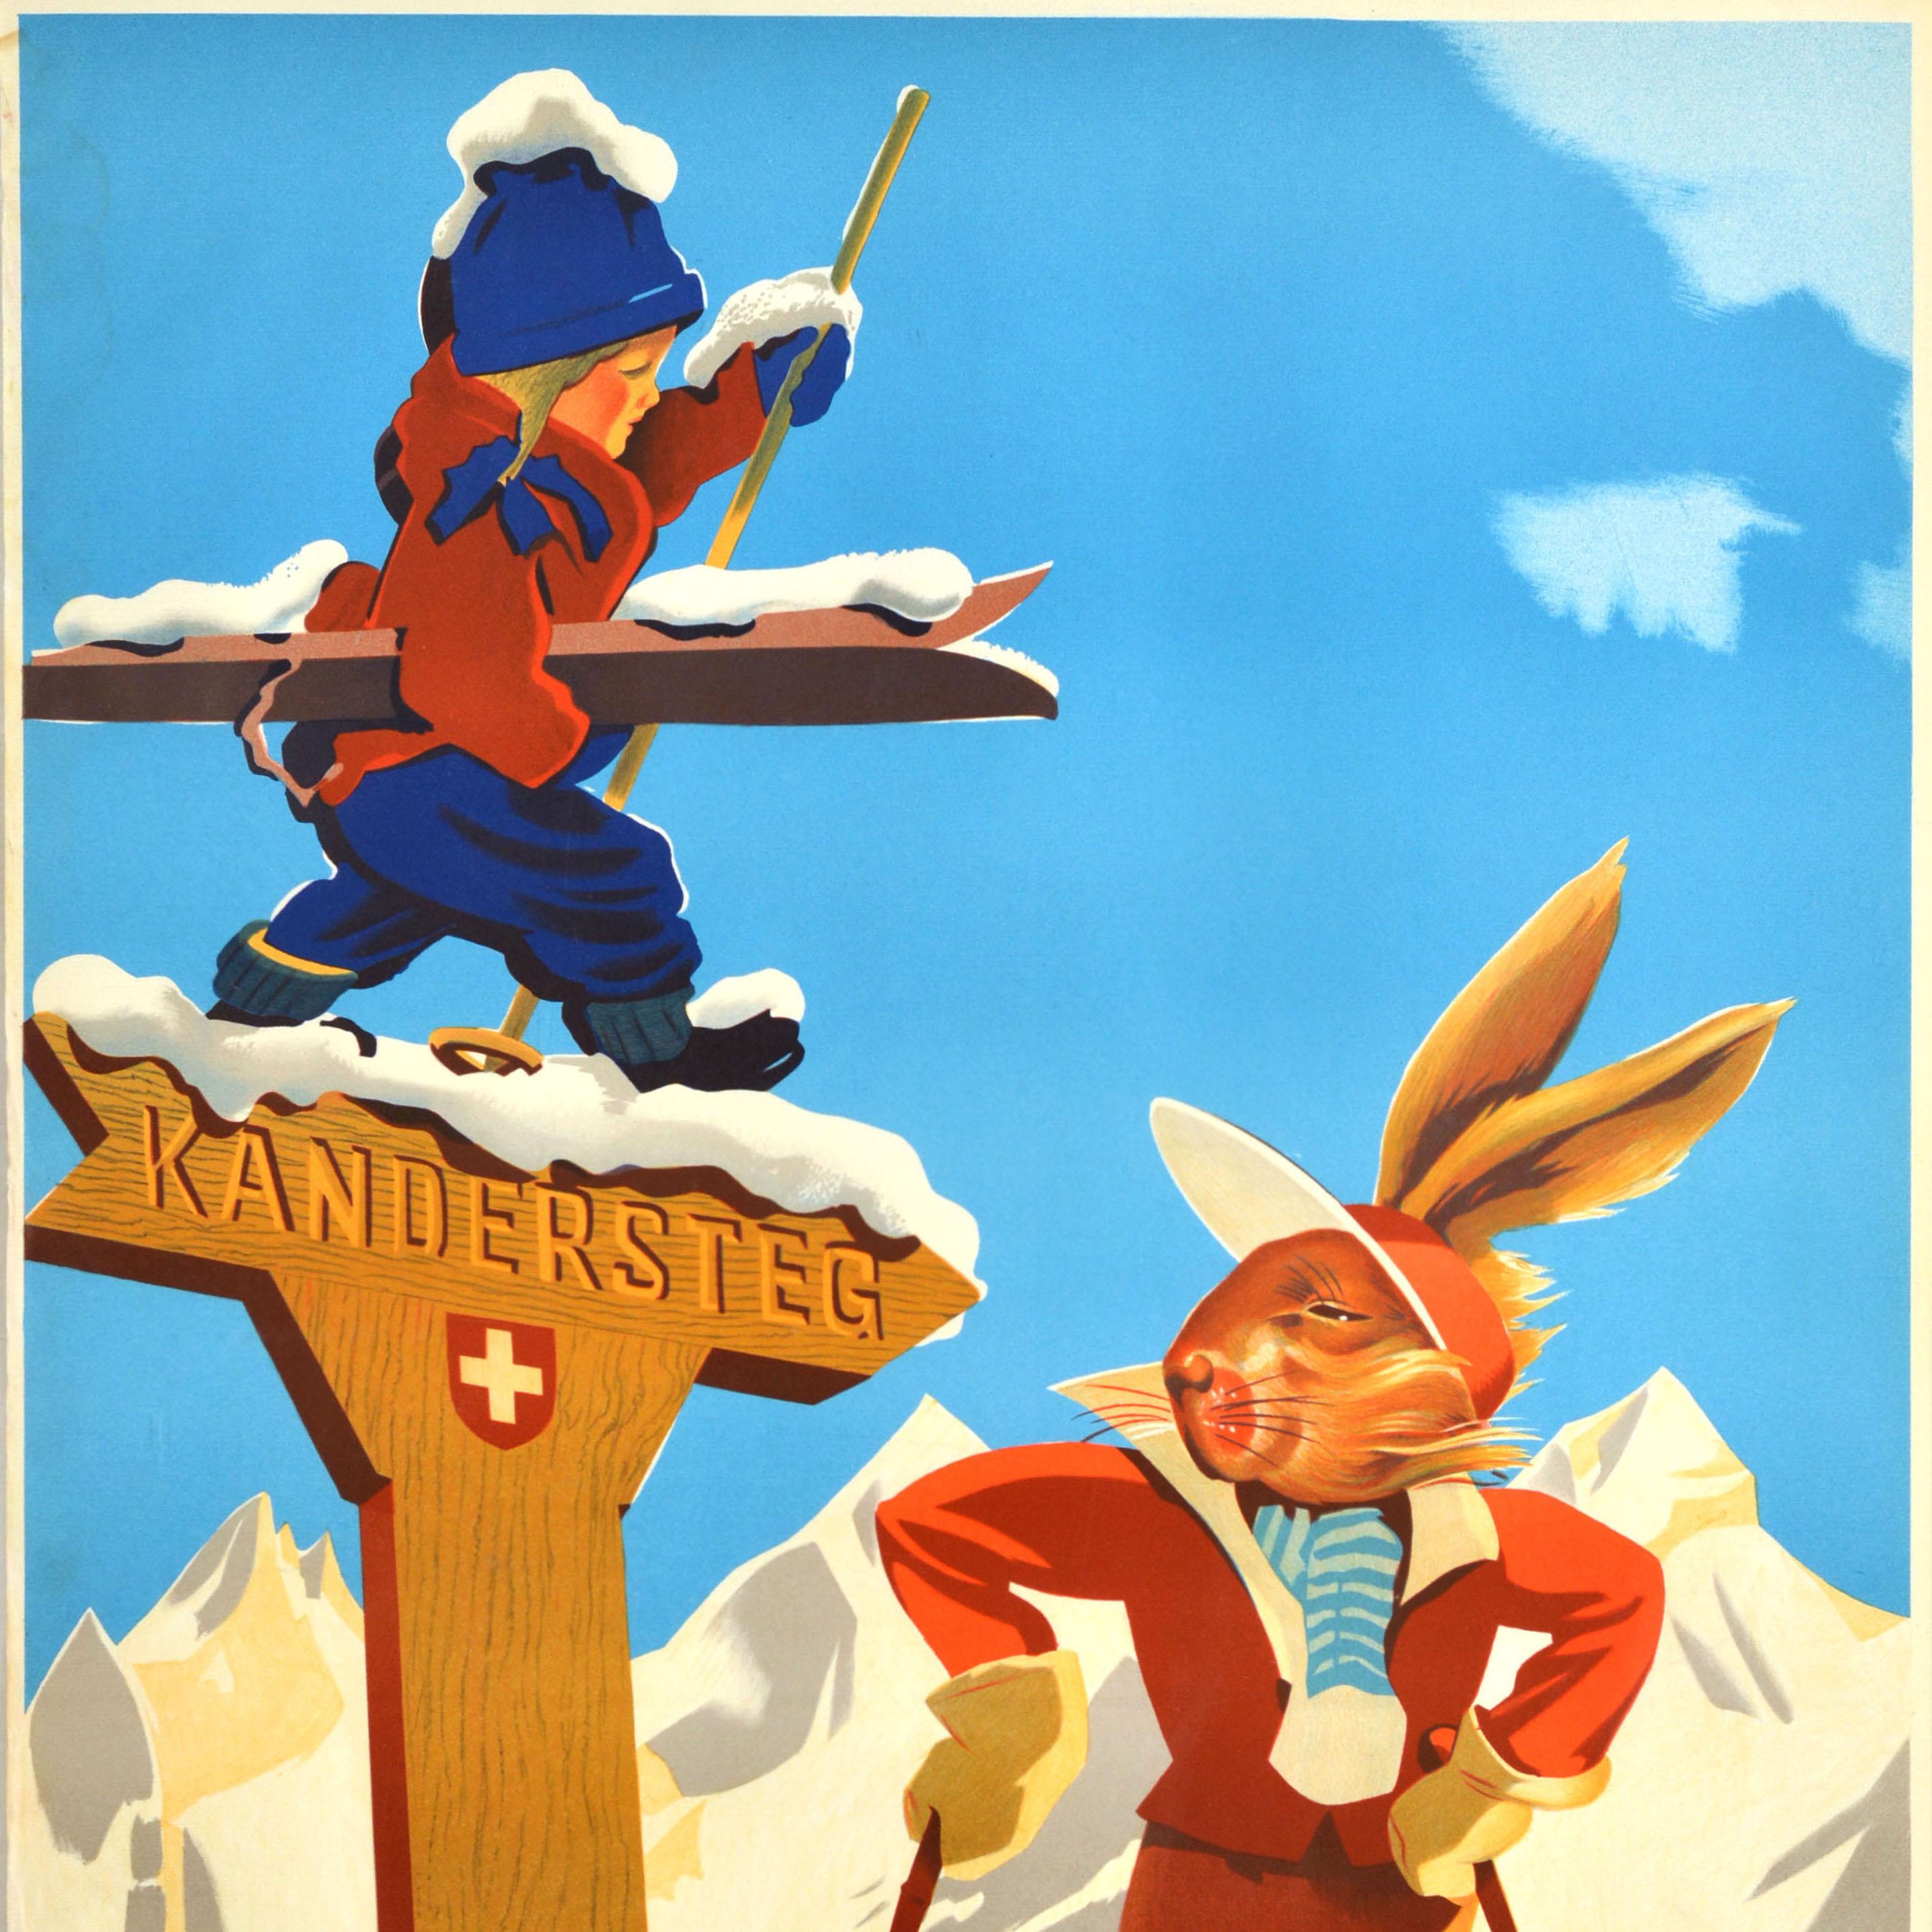 Original-Wintersportplakat für den Schweizer Wintersportort Kandersteg in den Berner Oberländer Alpen mit einer lustigen Illustration eines Hasen auf Skiern, der auf ein hölzernes Kandersteg-Straßenschild mit einer Schweizer Flagge blickt, einem